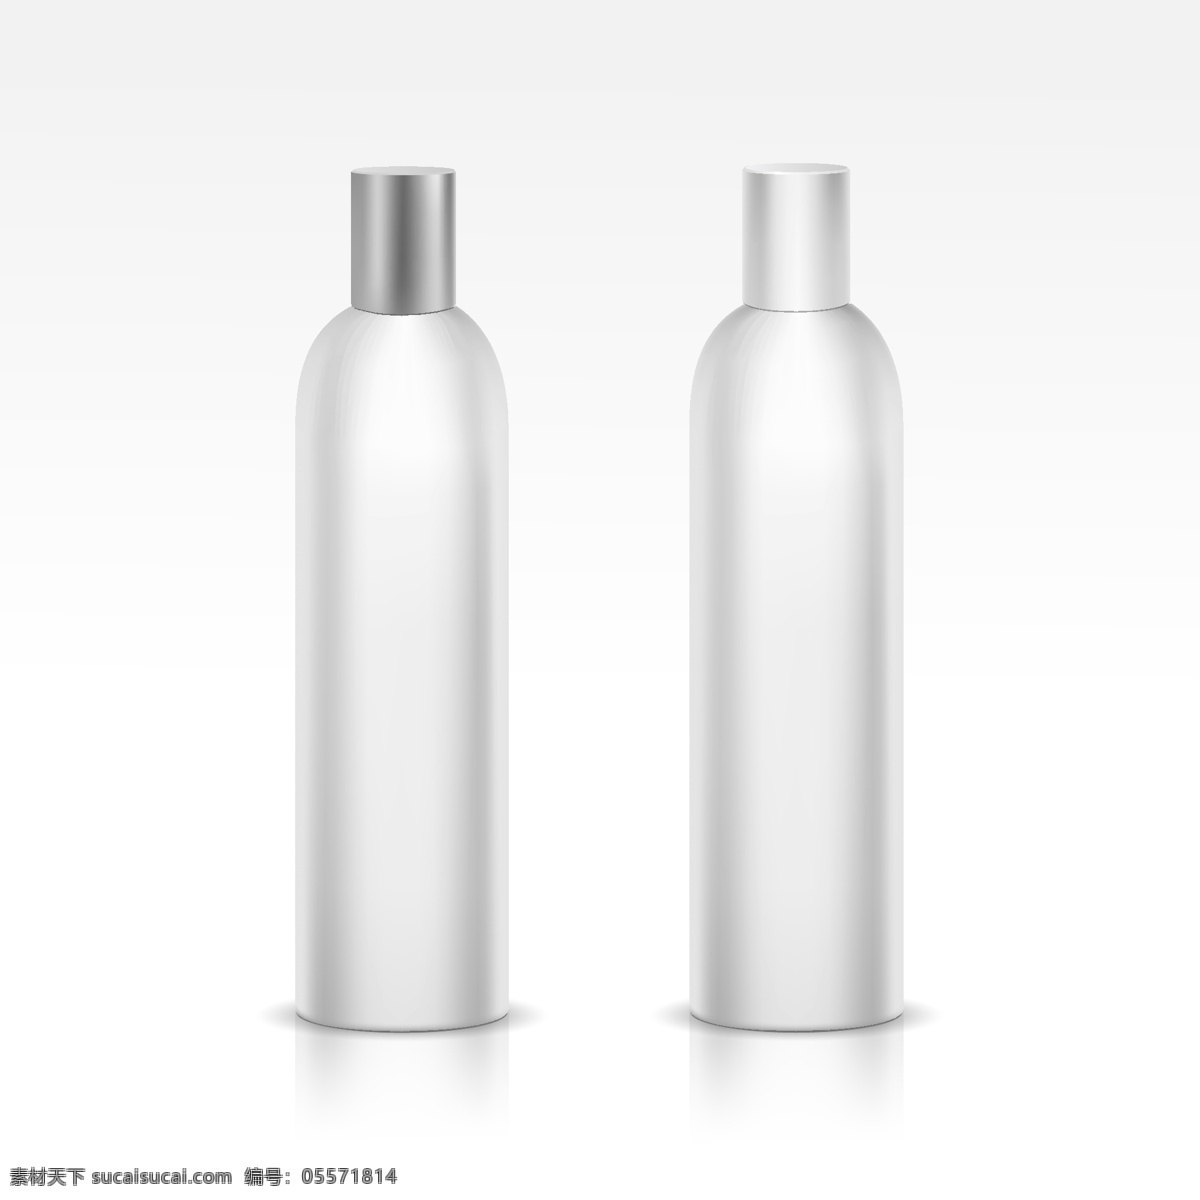 洗 化 用品 瓶子 化妆品 产品包装 包装设计 白色瓶子 洗化用品 展示效果图 矢量 高清图片